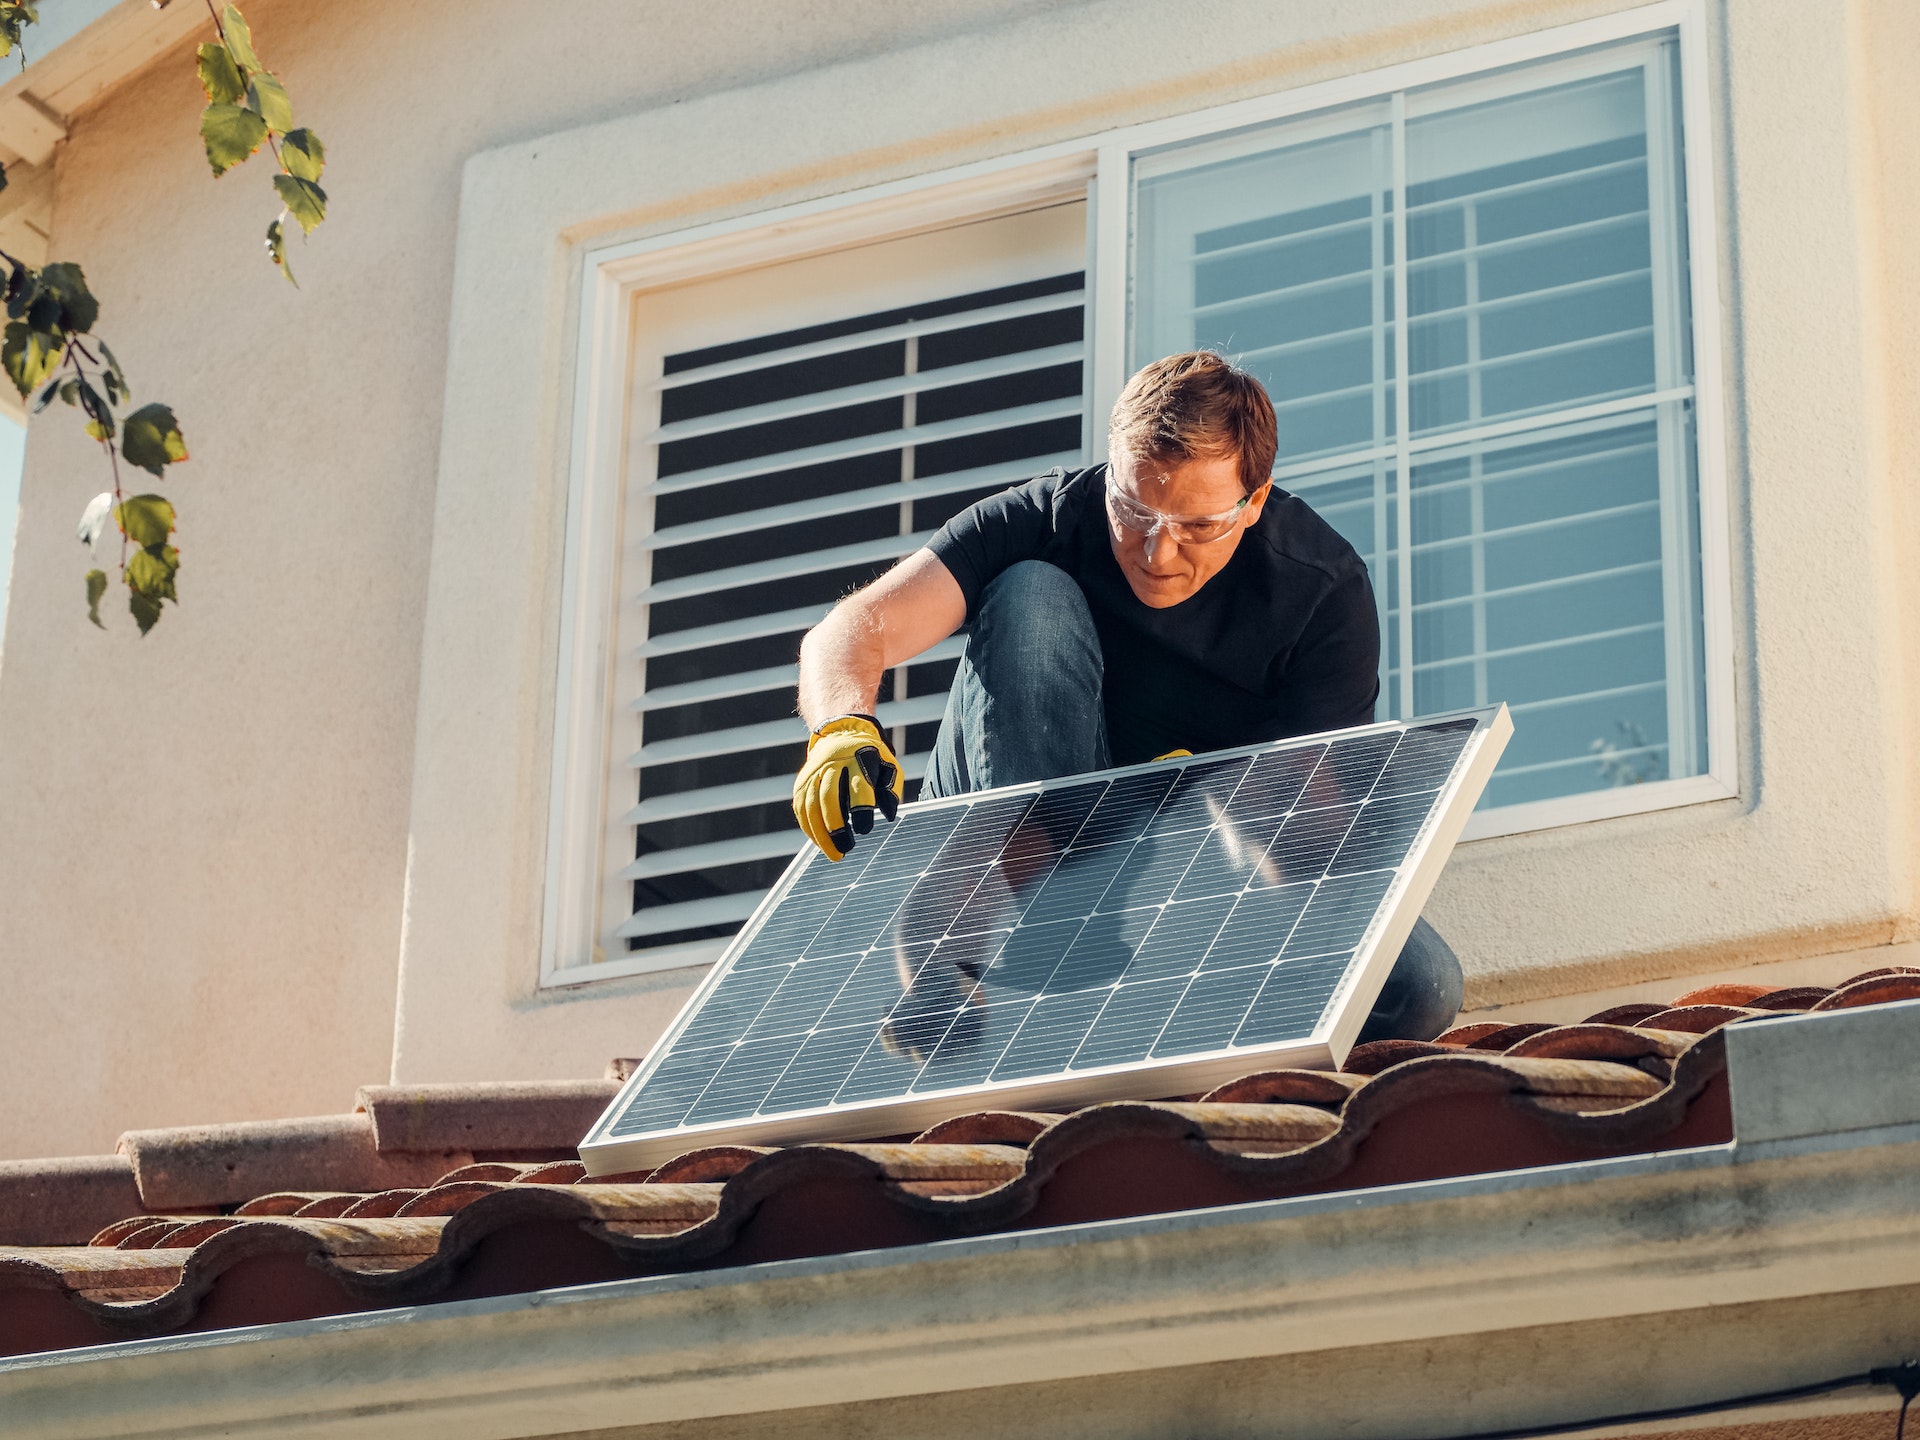 Teraz właściciele mieszkań zarobią na opłaty czynszowe dzięki panelom słonecznym na dachach bloków